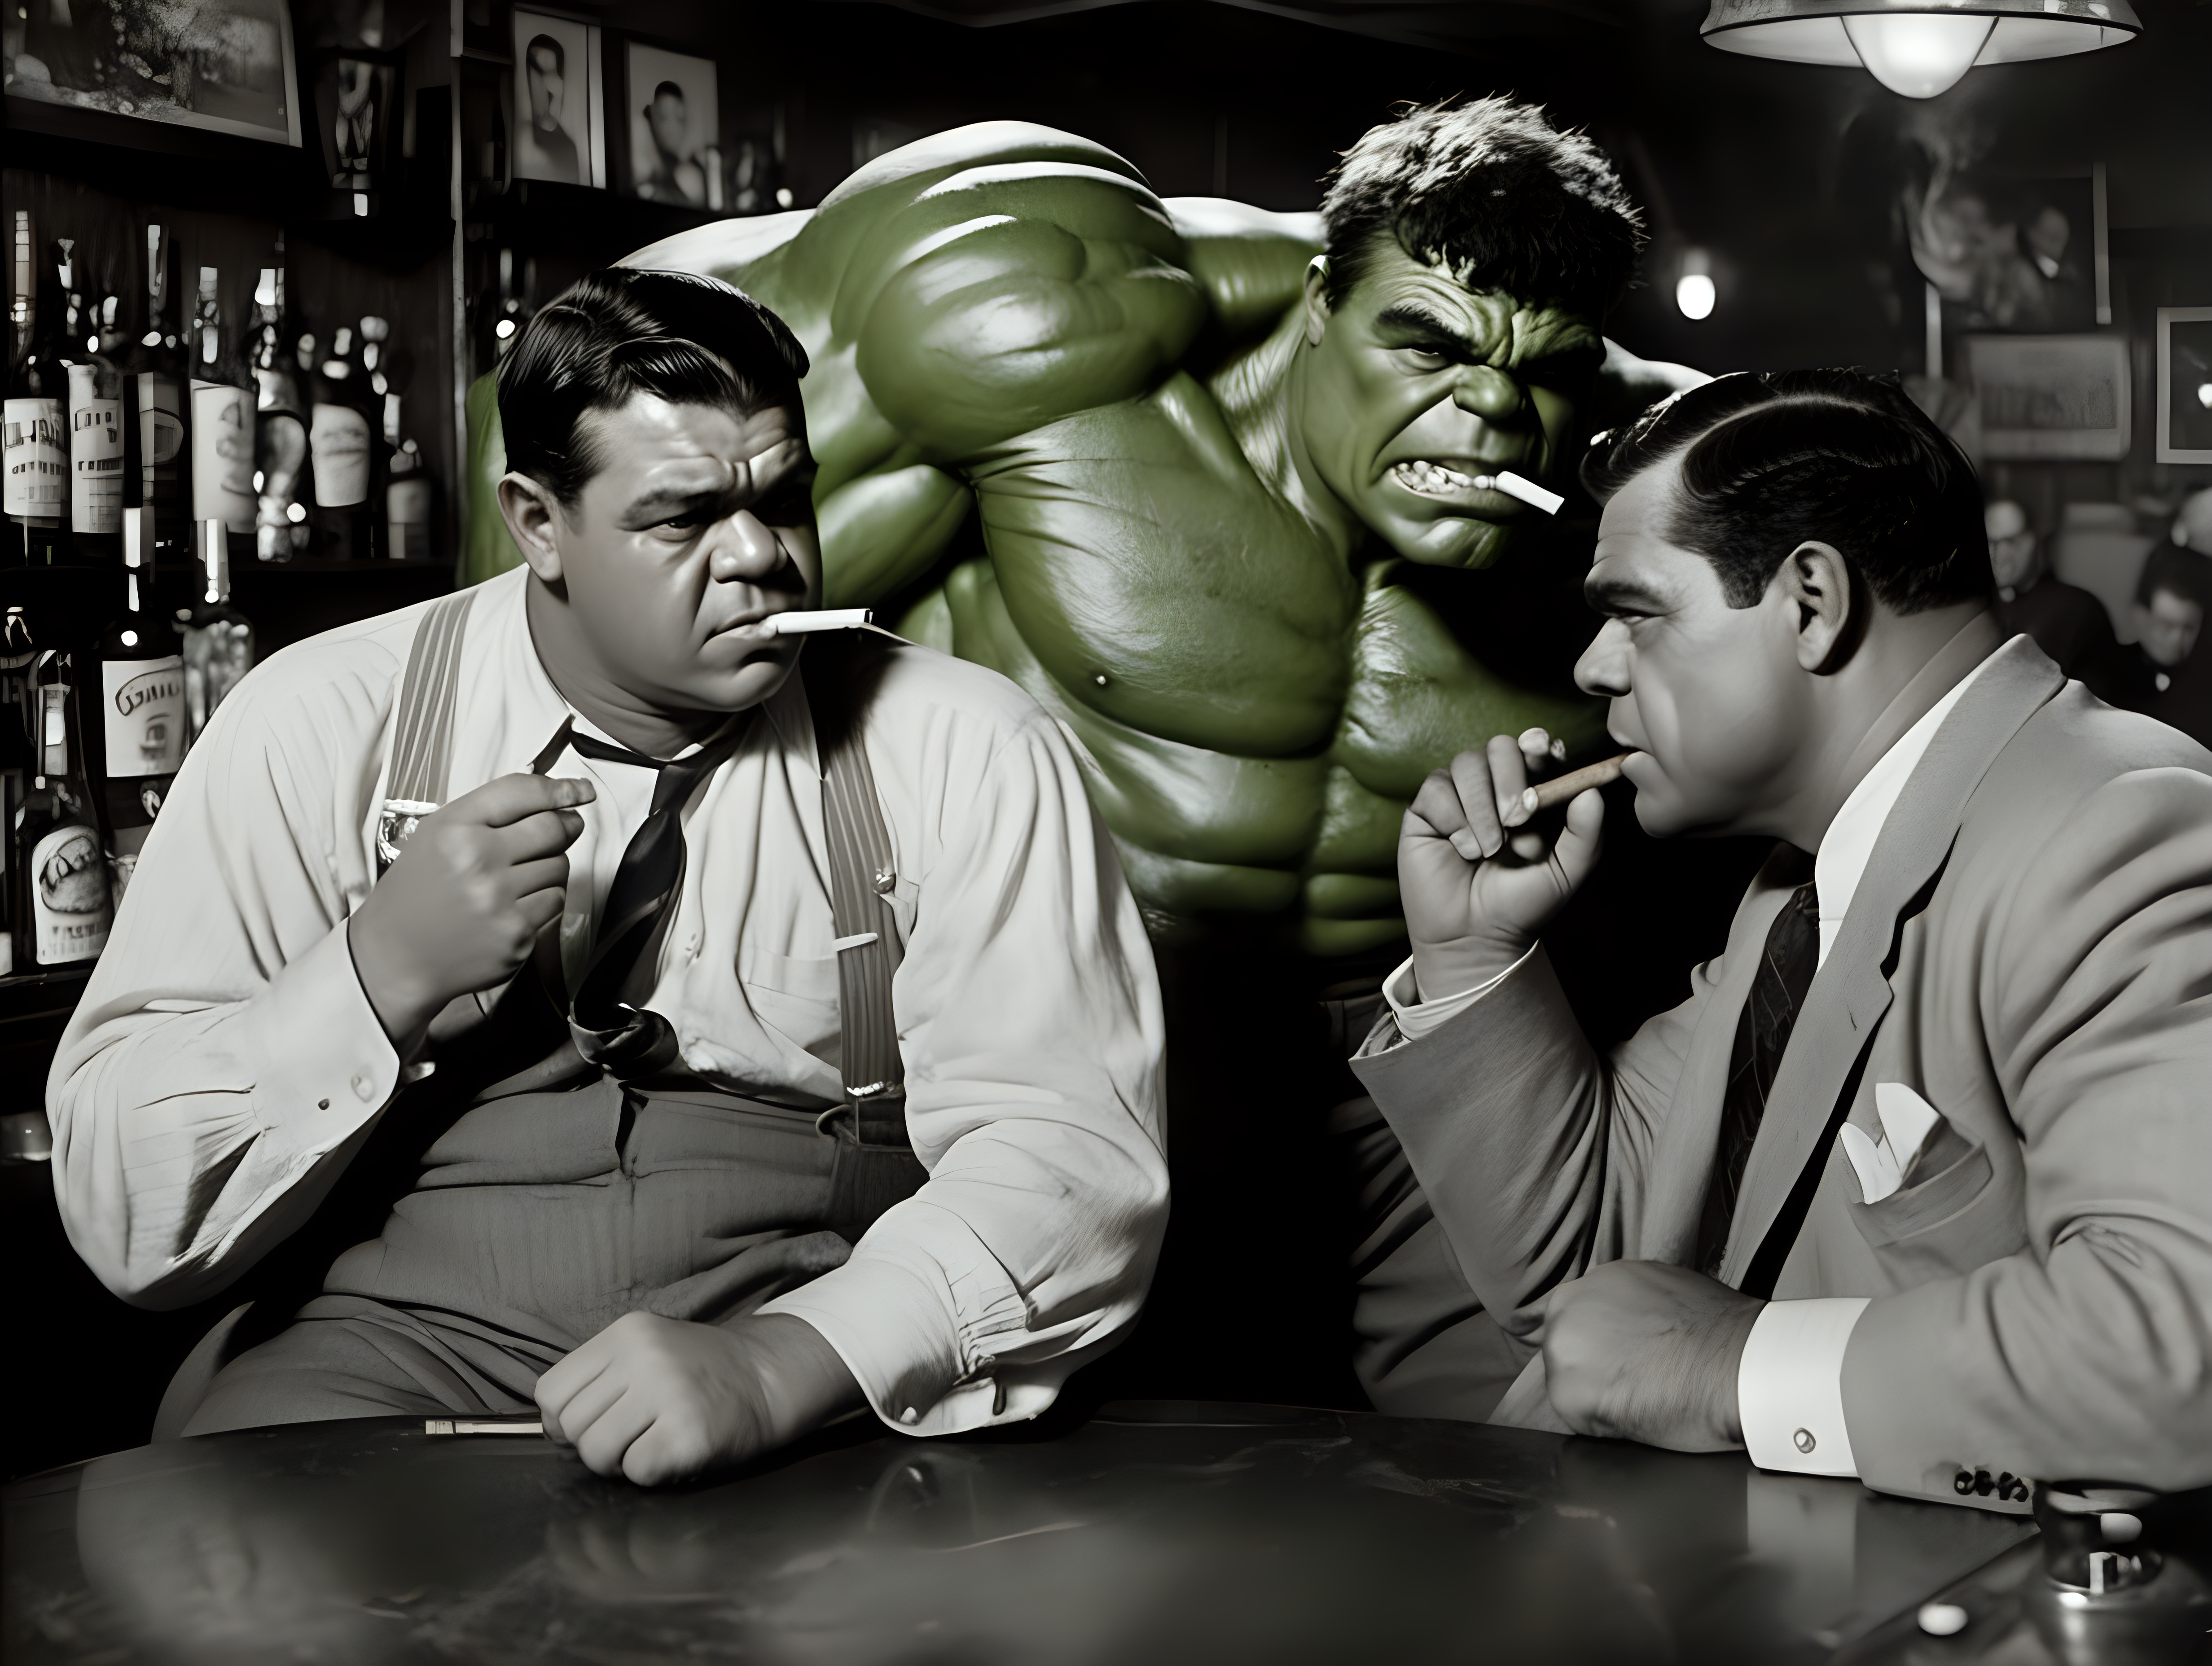 Babe Ruth and the Hulk smoking a cigar